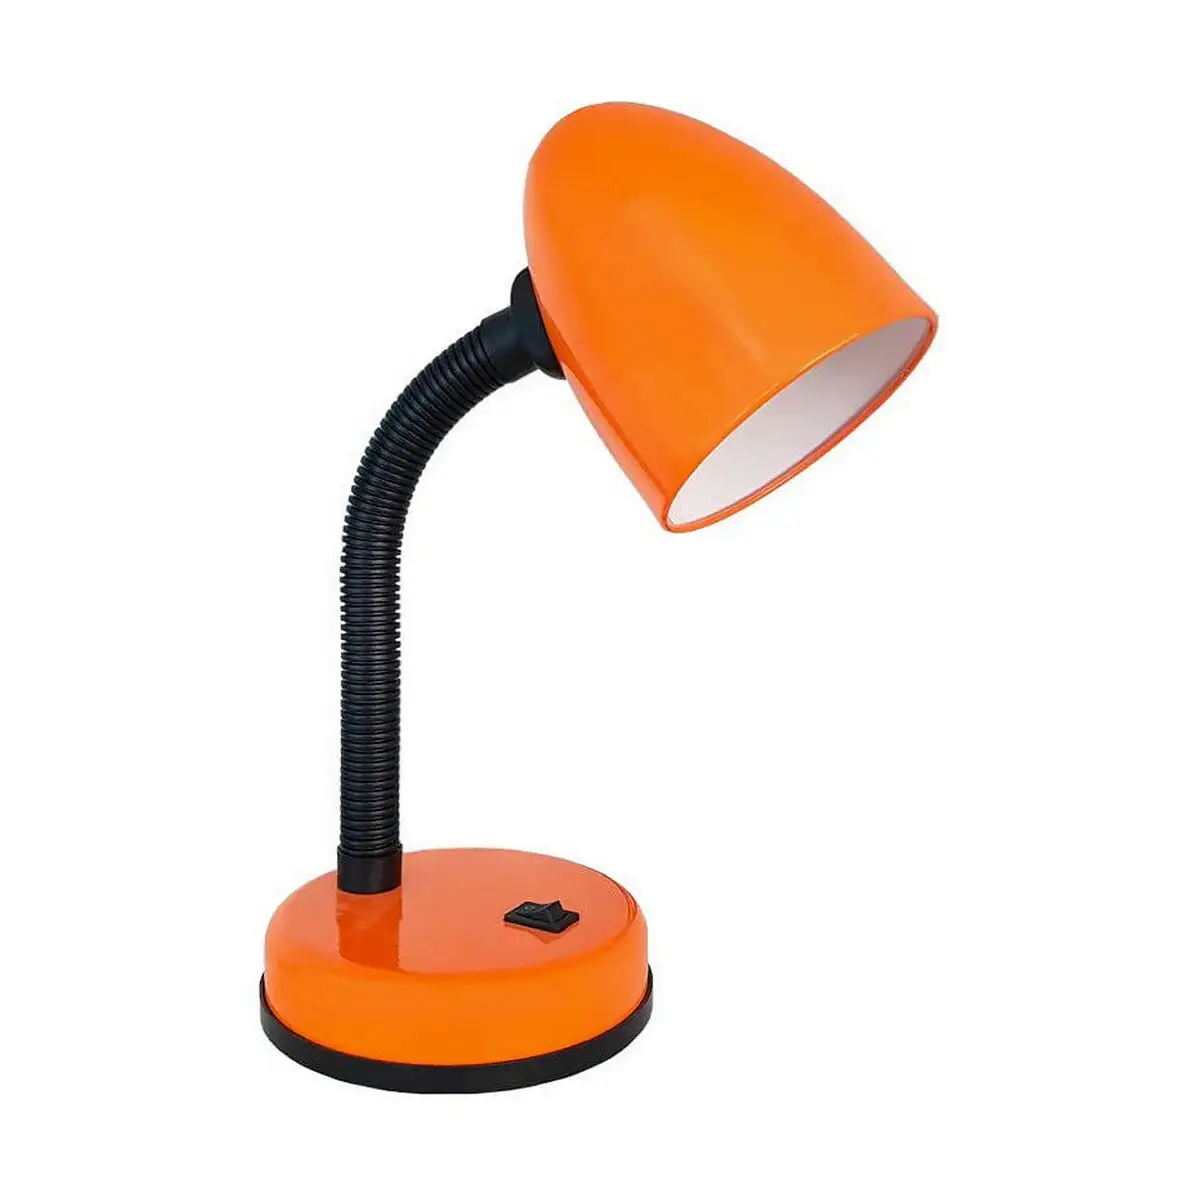 Lampe de bureau edm amsterdam e27 60 w flexo lampe de bureau me tal orange 13 x 34 cm_8413. Bienvenue chez DIAYTAR SENEGAL - Où Chaque Achat Fait une Différence. Découvrez notre gamme de produits qui reflètent l'engagement envers la qualité et le respect de l'environnement.